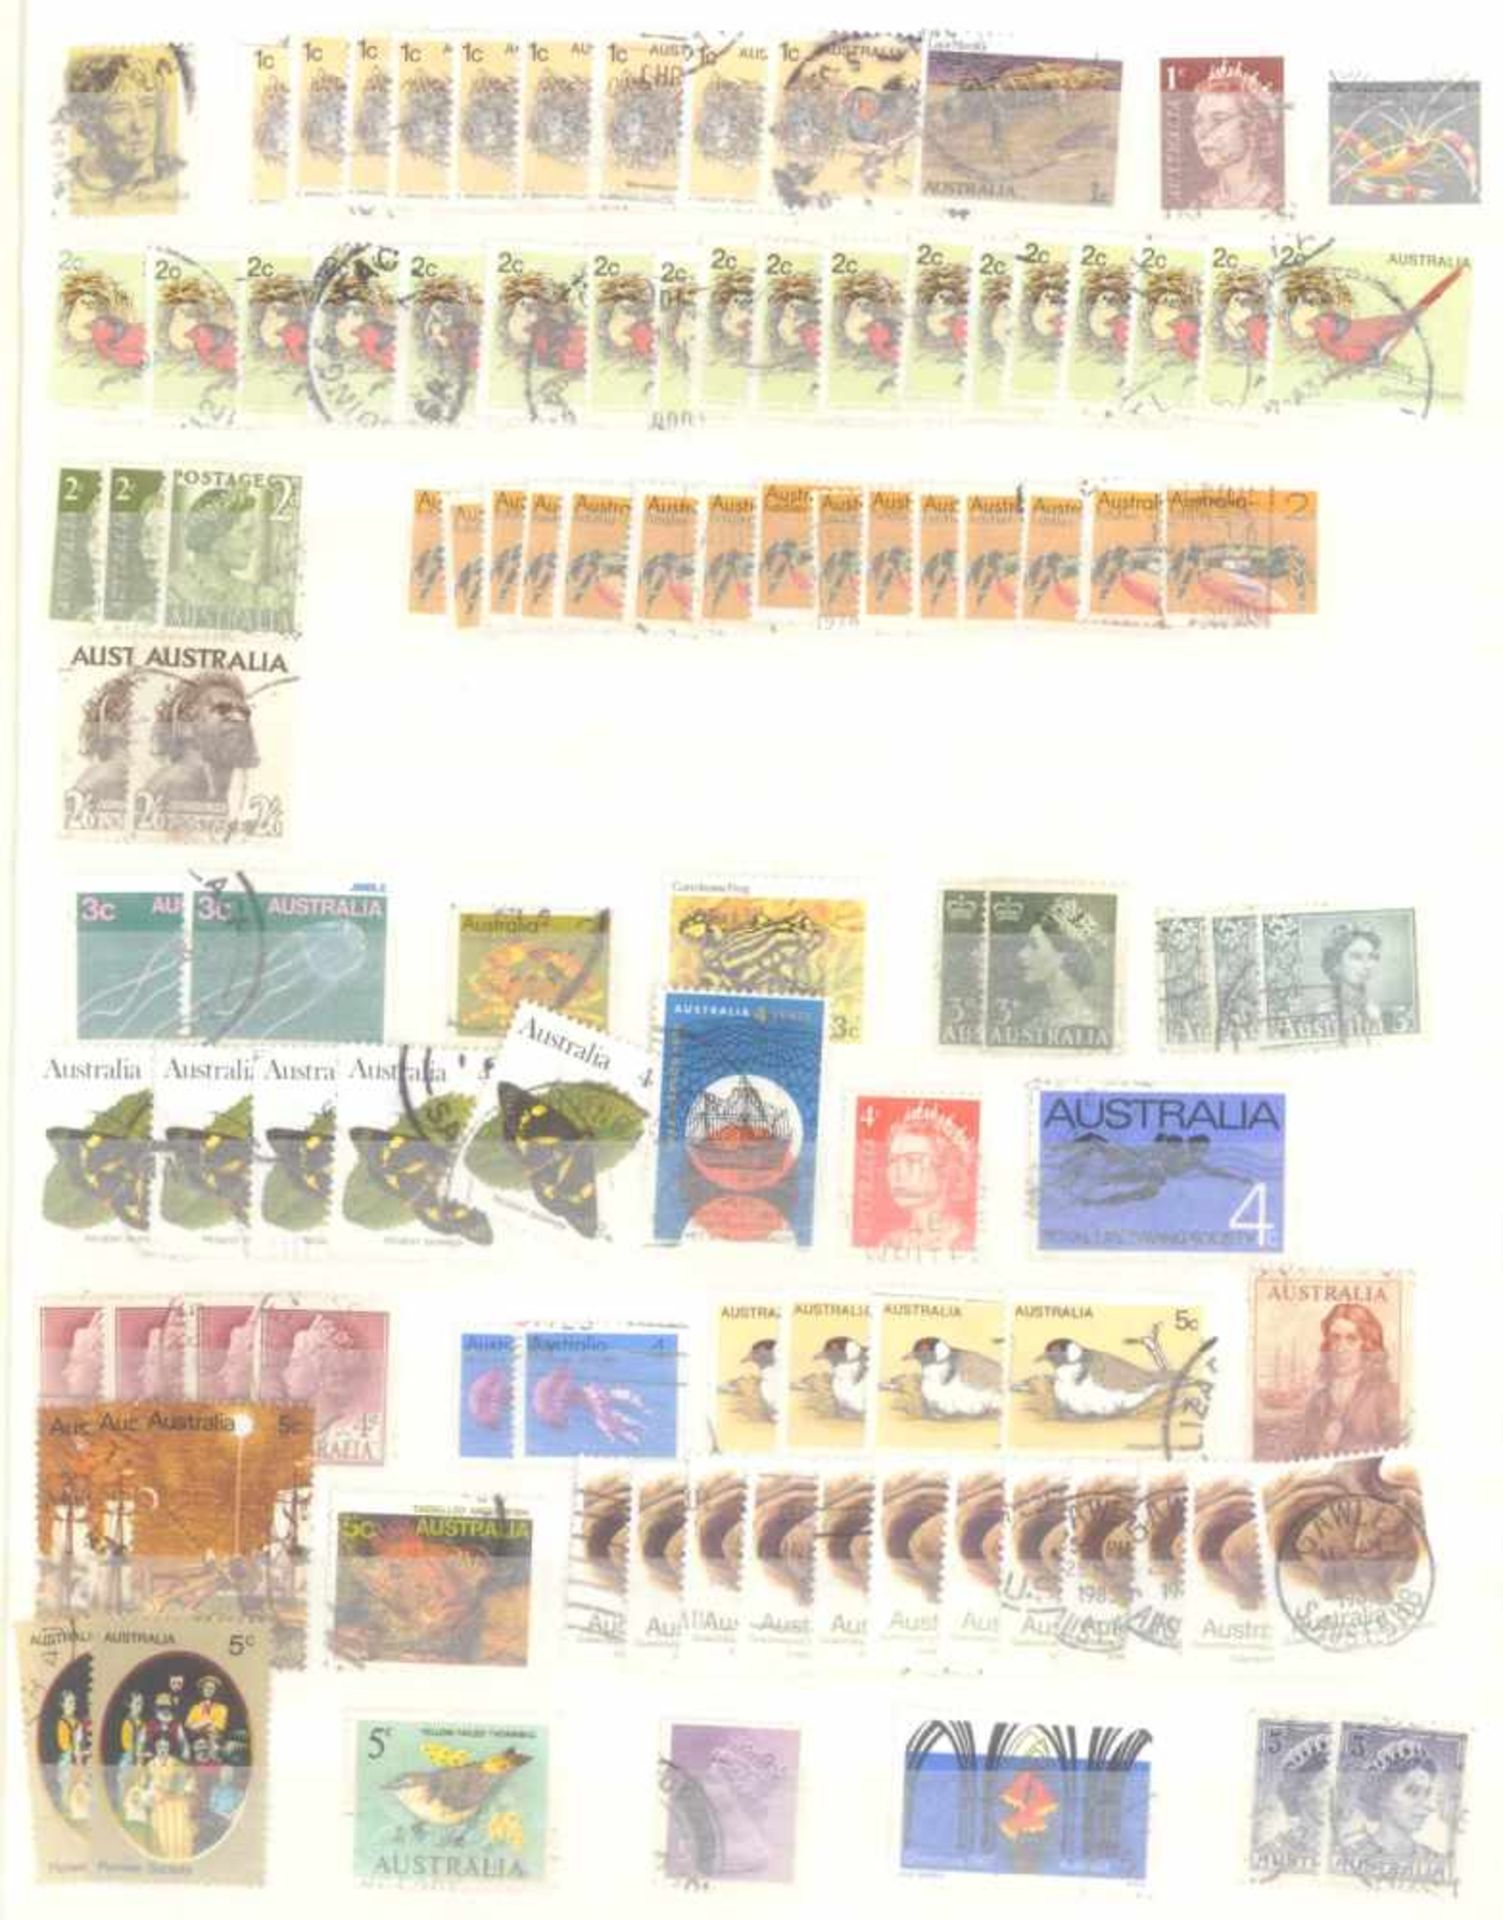 Kleiner Briefmarkennachlass Alle WeltIn 5 Steckalben, gestempelte Marken der BRD, Berlin, etwas - Bild 4 aus 12